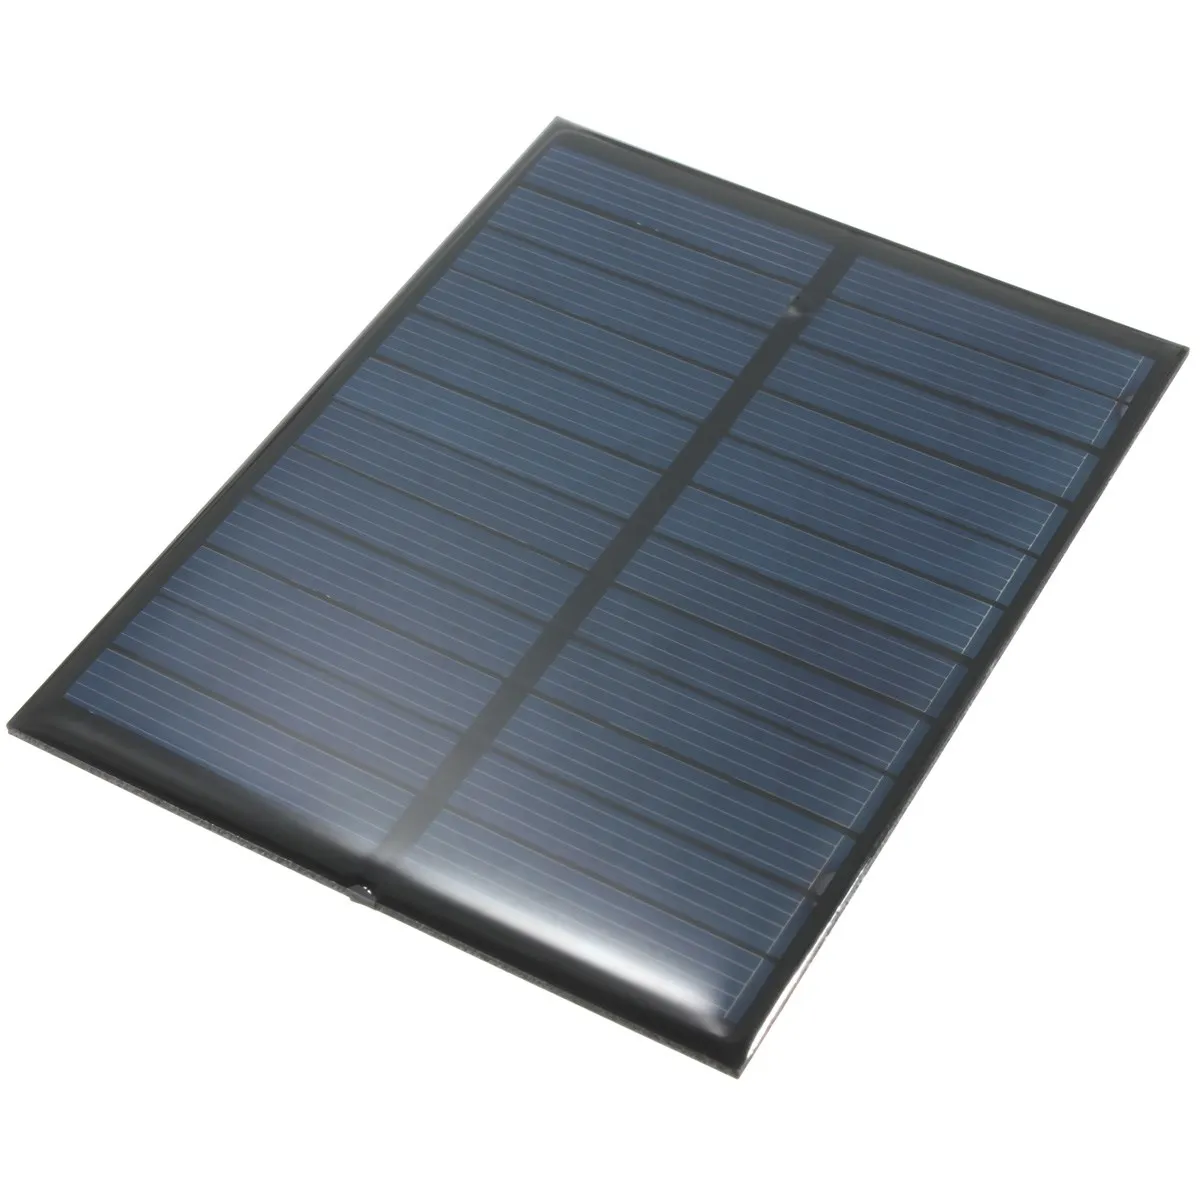 LEORY 6V 1,1 W 200mA поликристаллического кремния эпоксидной смолы панели солнечных батарей модуль Мощность Мини солнечных батарей Портативный открытый Зарядное устройство 112x84 мм